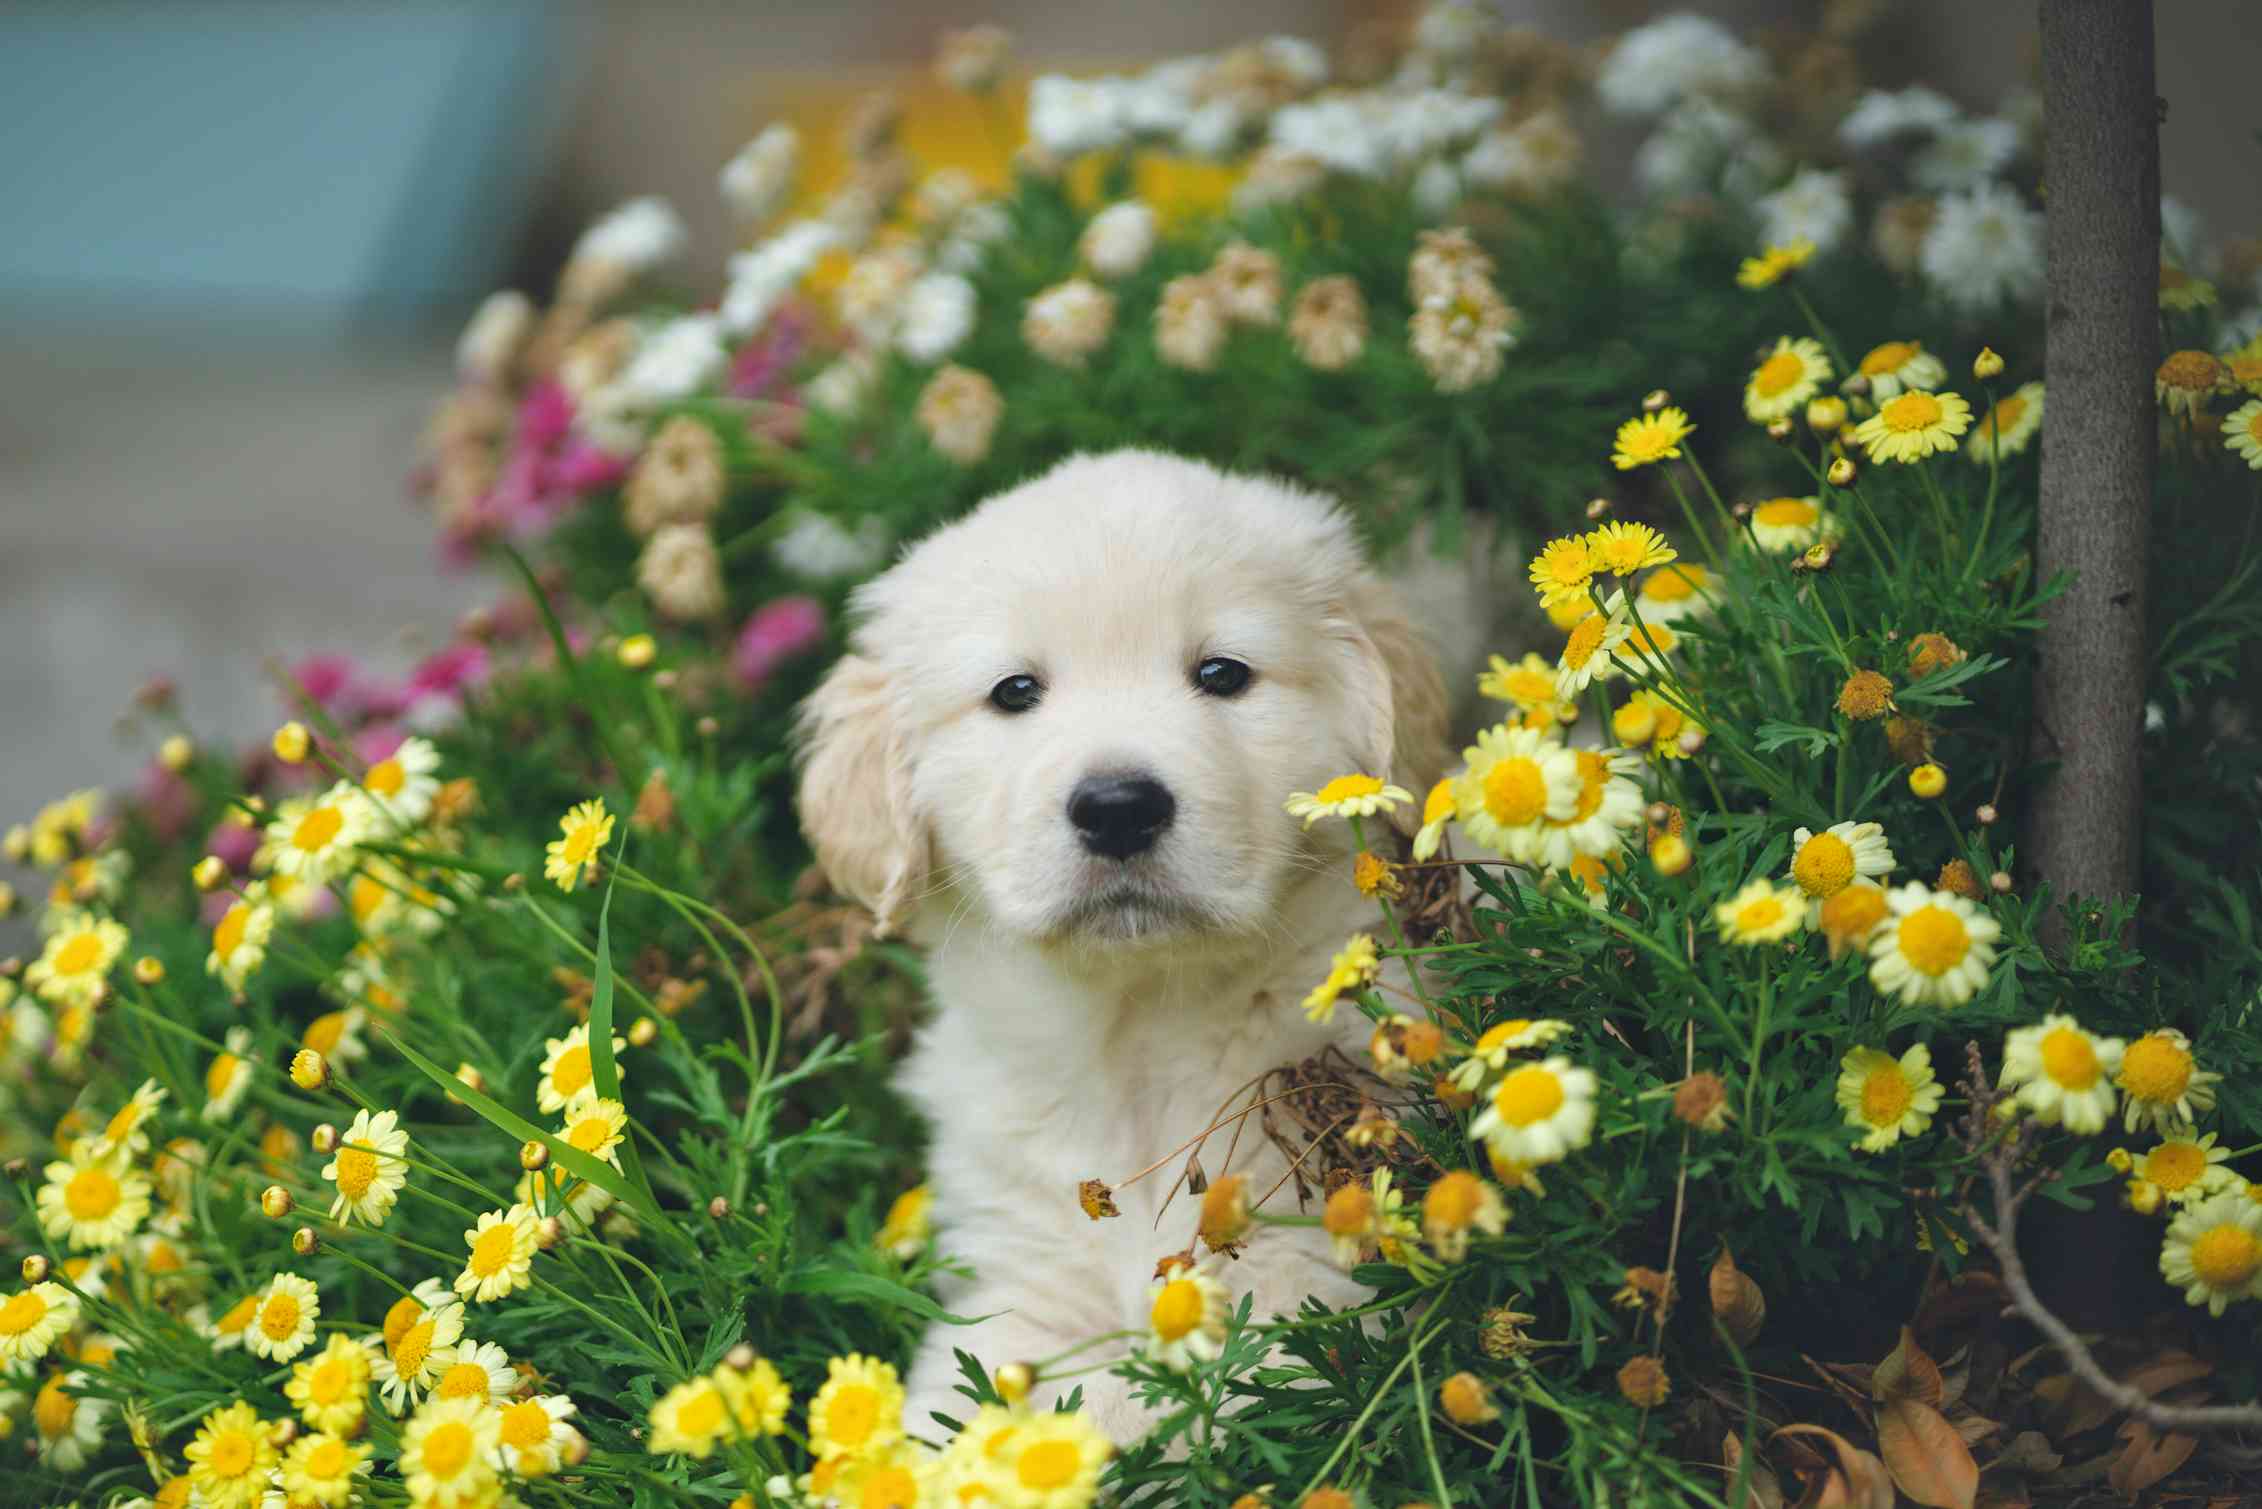 Puppy in flower bushes